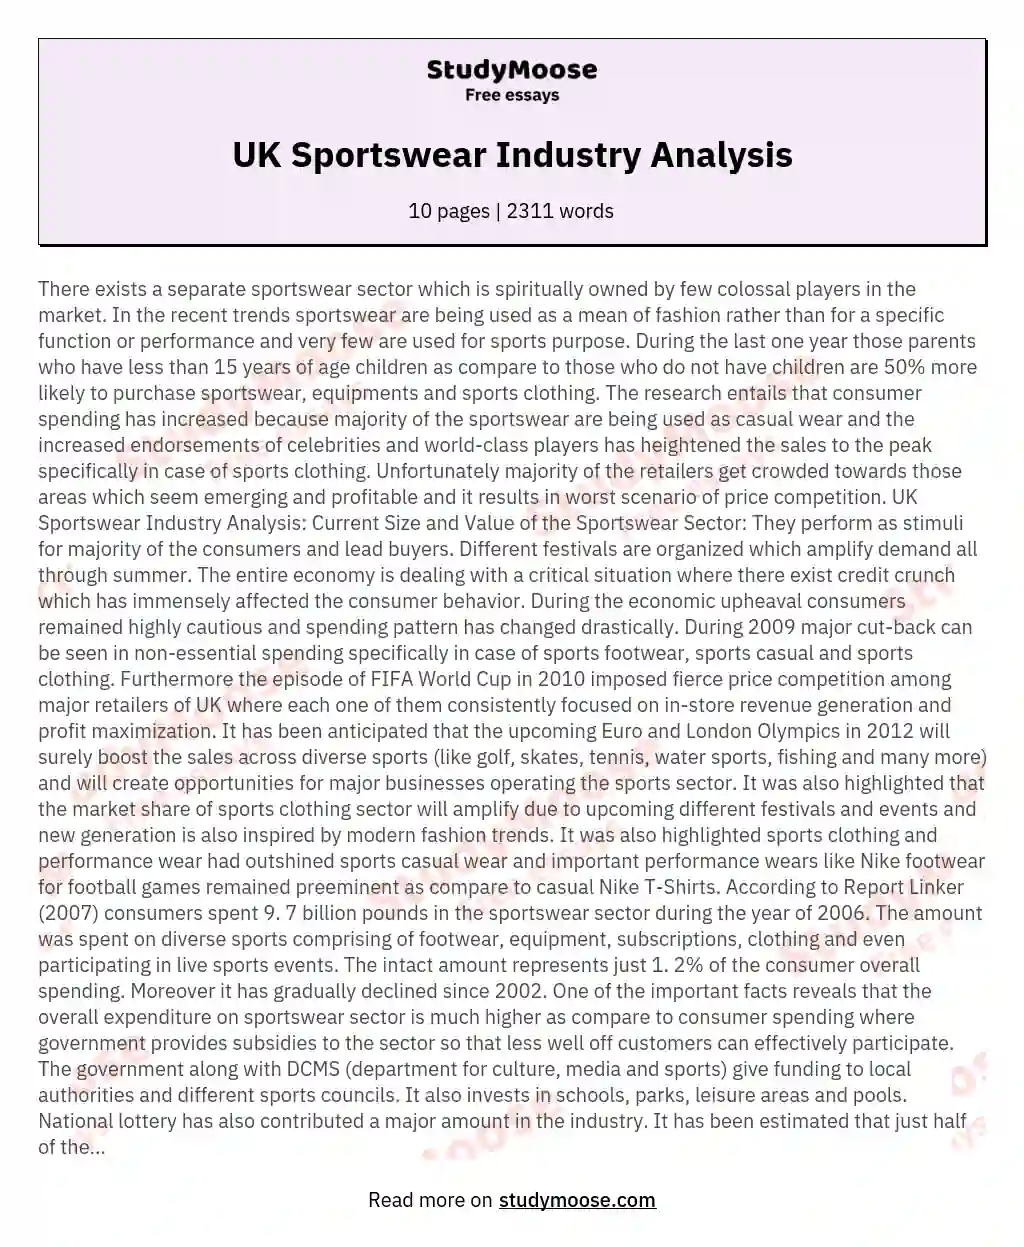 UK Sportswear Industry Analysis essay